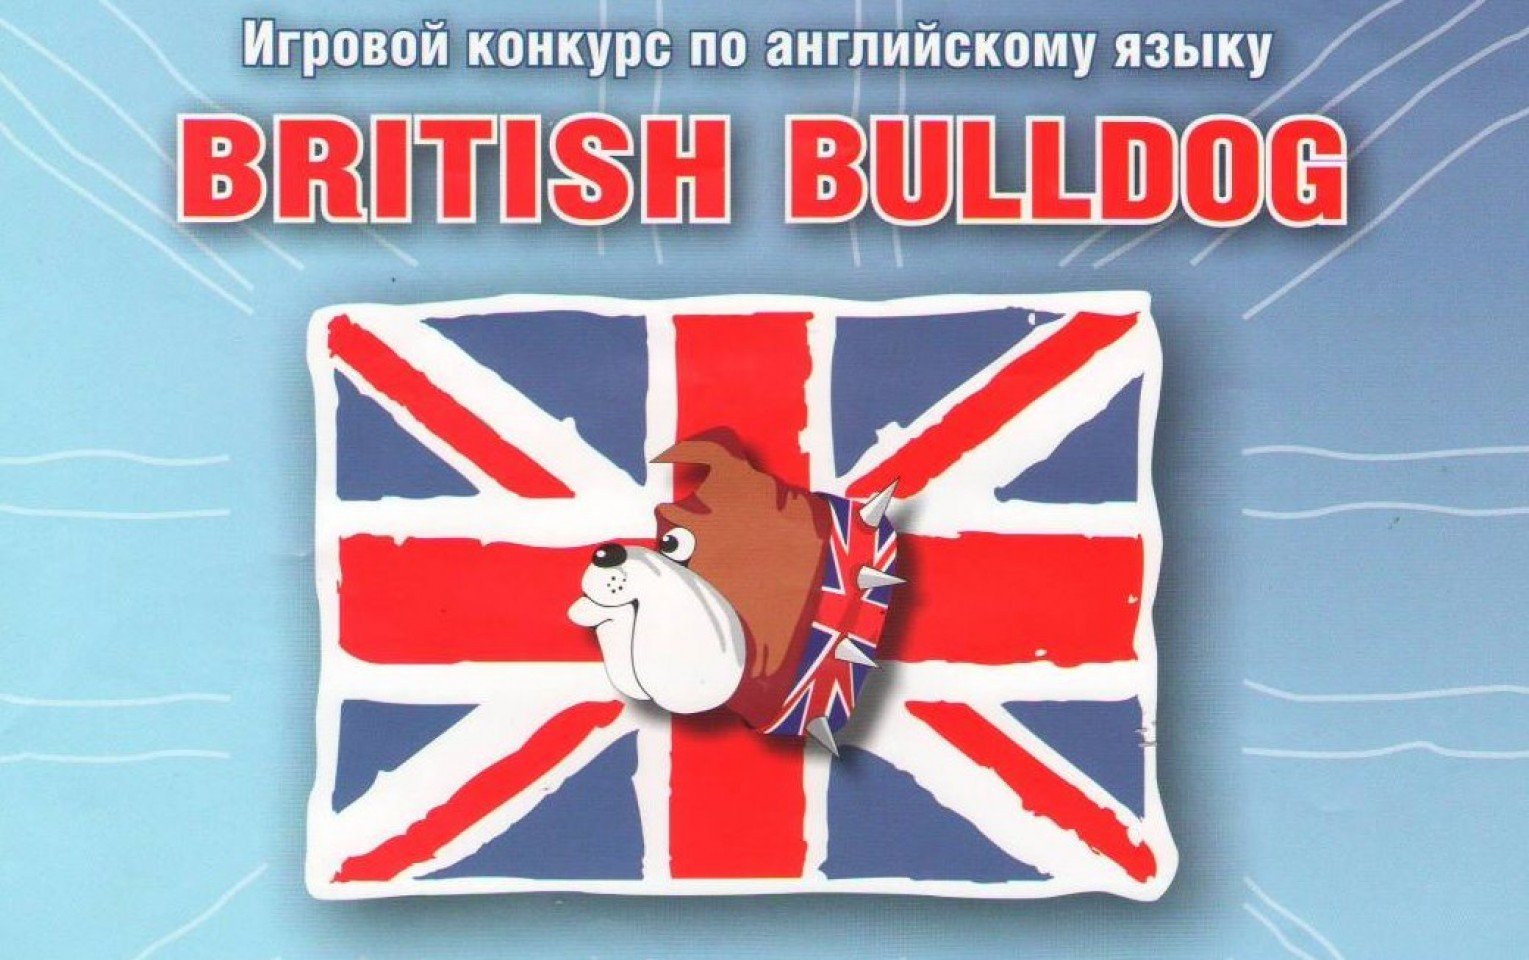 Международный игровой конкурс по английскому языку «British Bulldog».